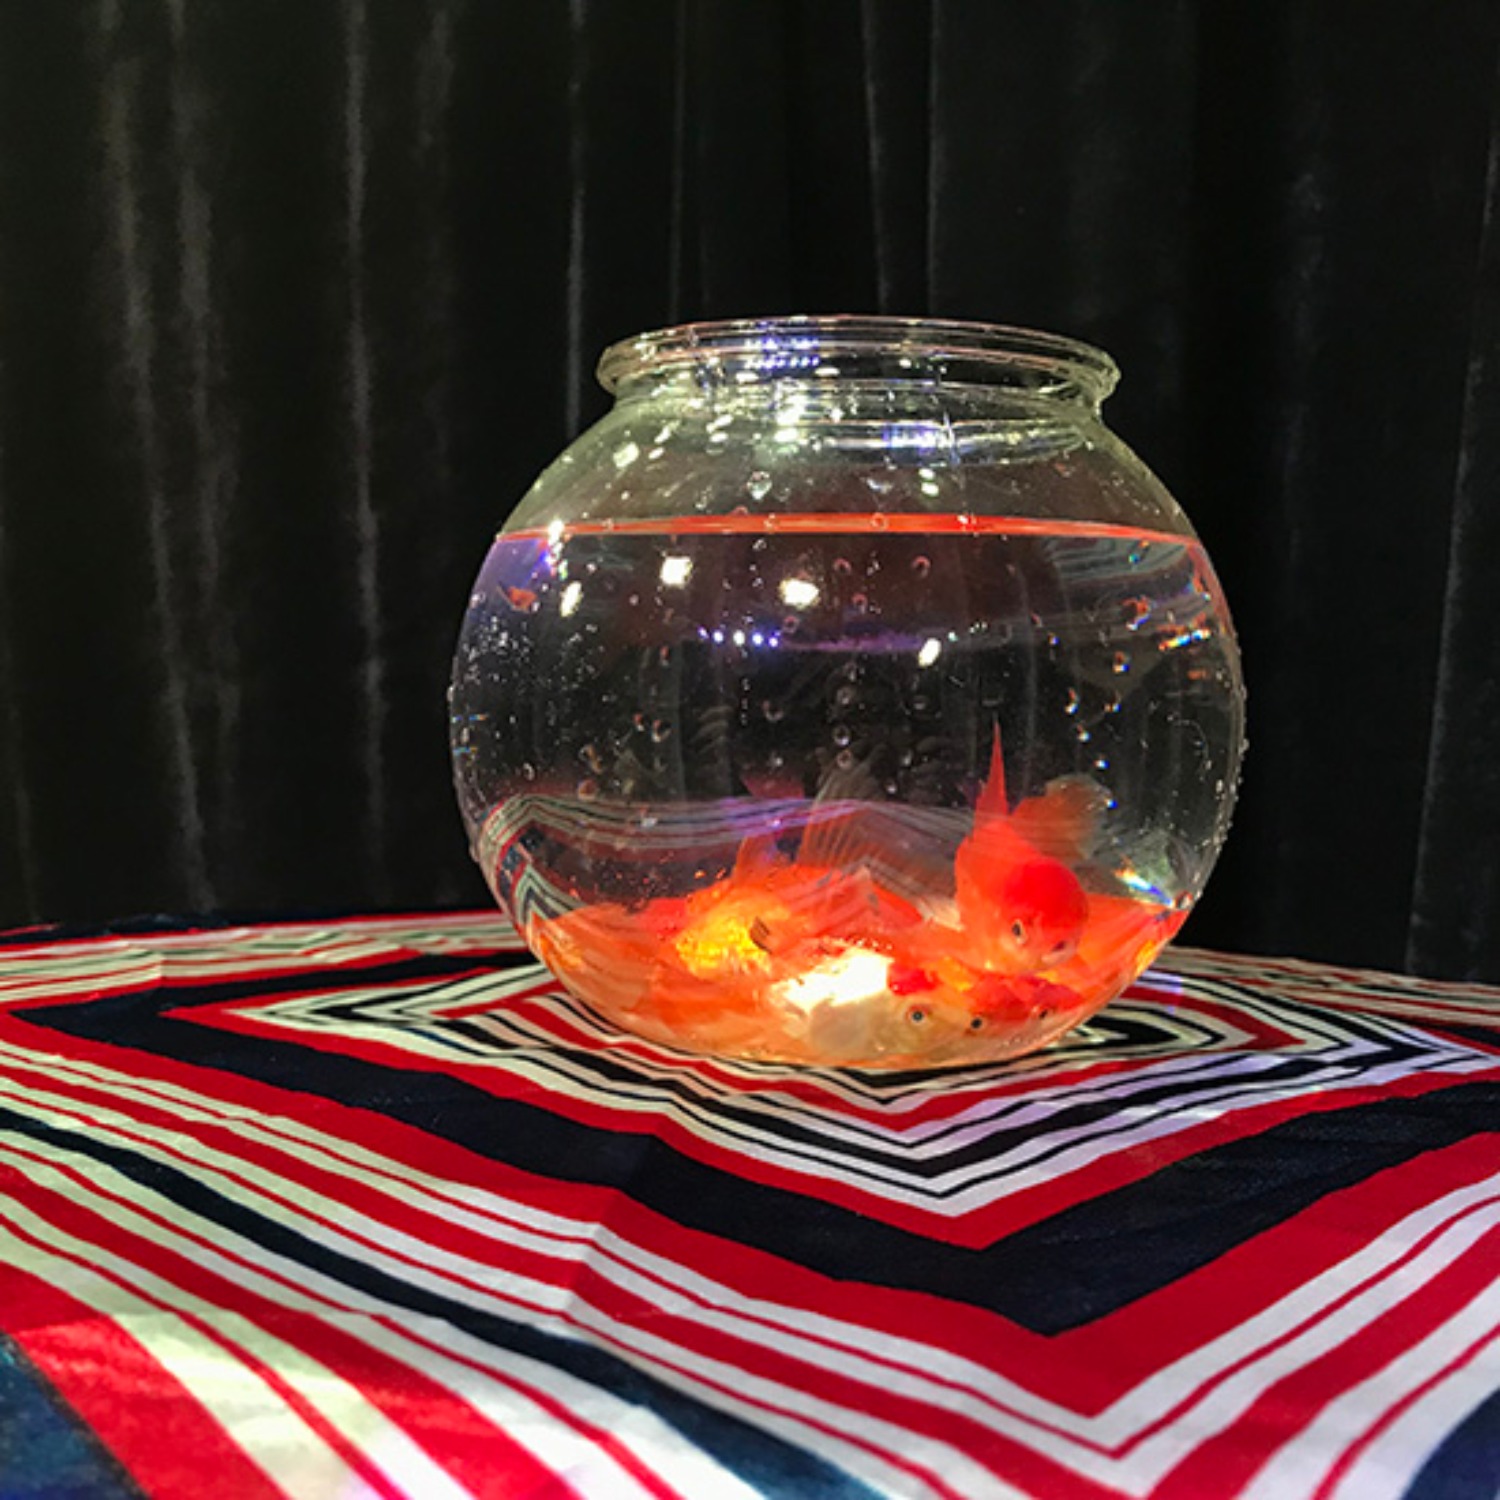 [매직 골드피쉬보울]Magic Goldfish Bowl (Small) by J.C Magic 빈 어항에 순식간에 금붕어가 나타납니다.